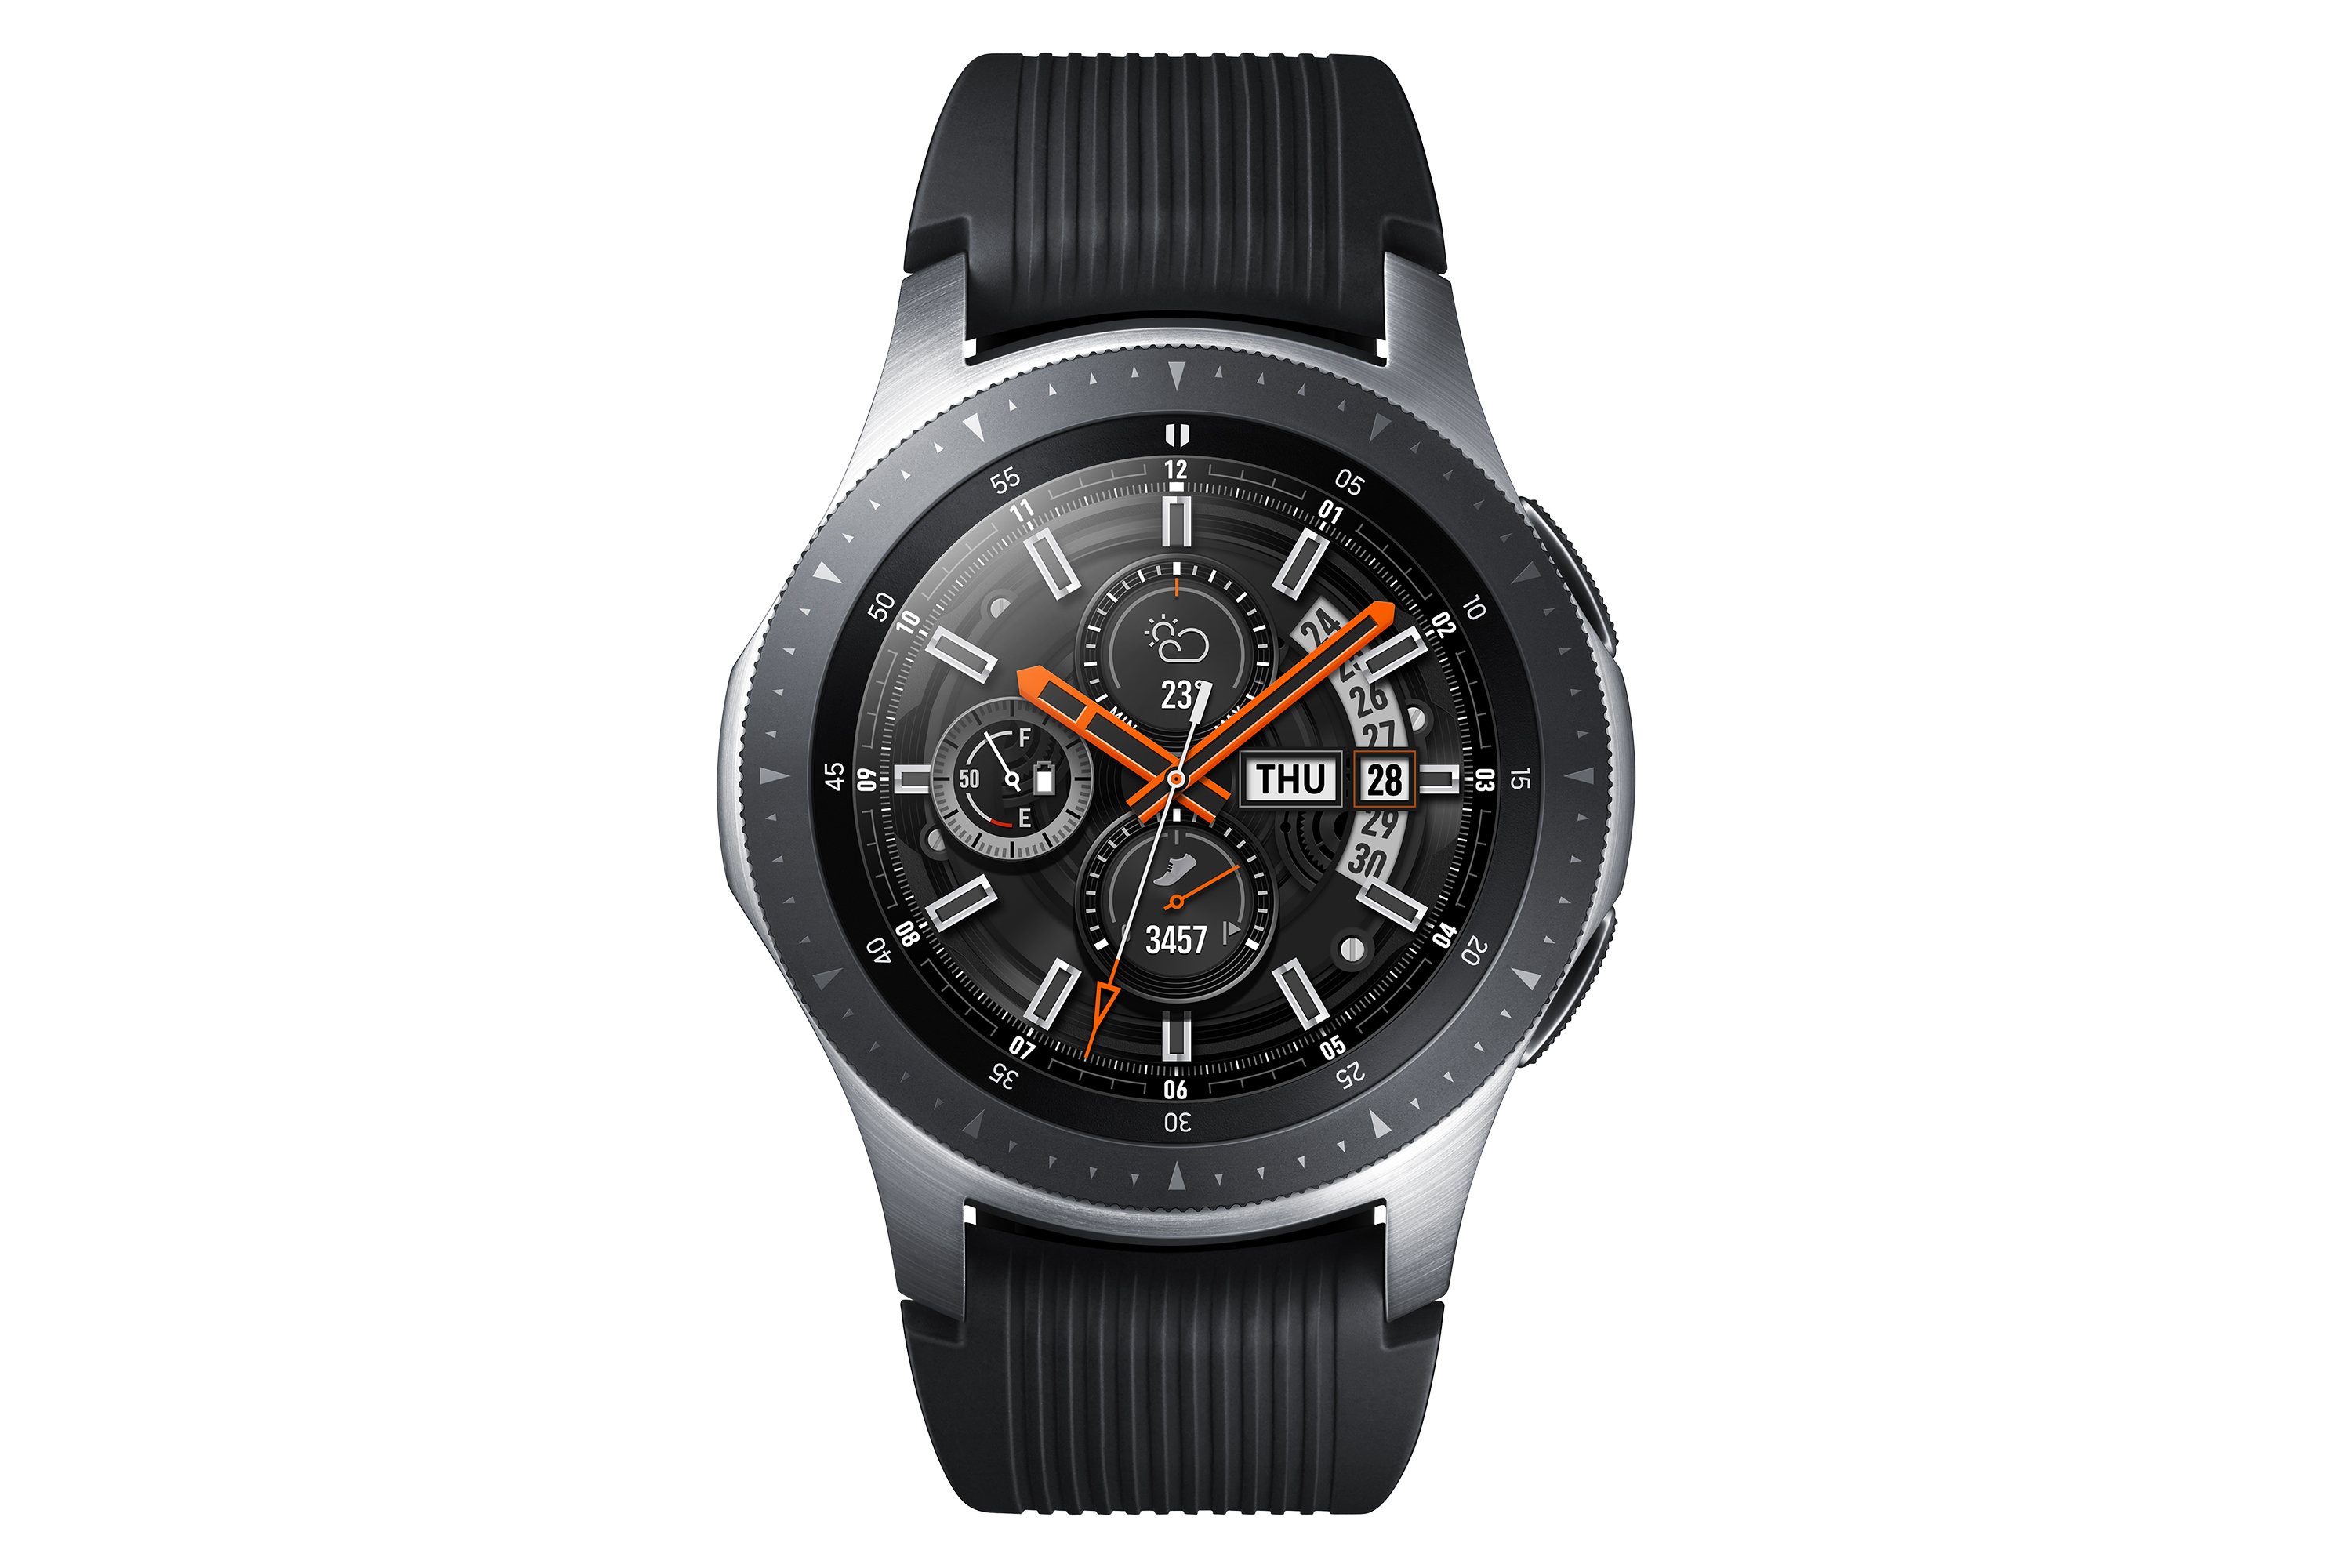 Actualización: Samsung Galaxy Watch recibe el premio a mejor wearable
 